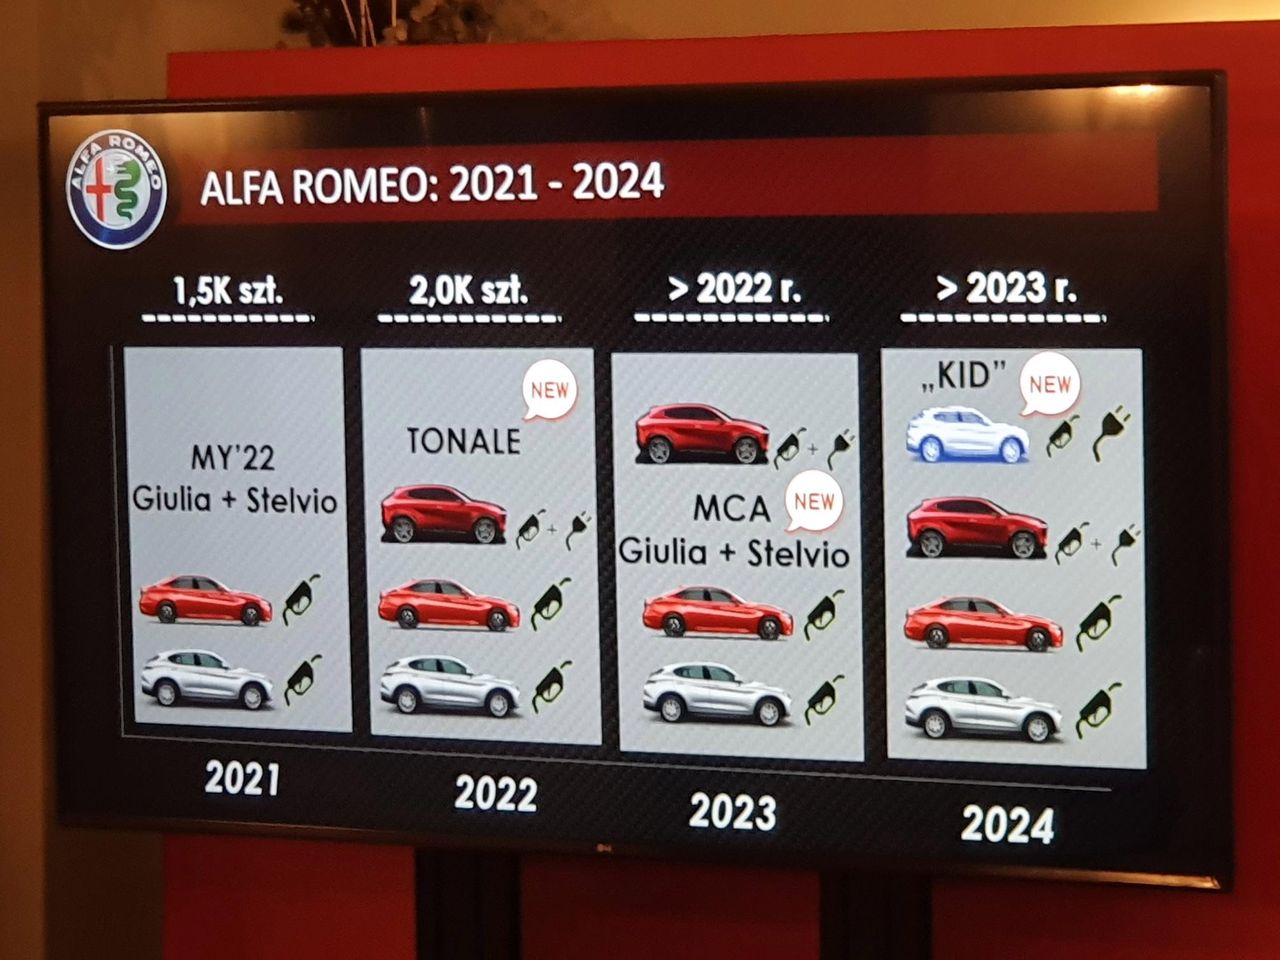 Tak prezentują się plany Alfy Romeo na najbliższe lata w Polsce. Co ciekawe, kupujemy ich więcej niż kierowcy na Wyspach Brytyjskich.